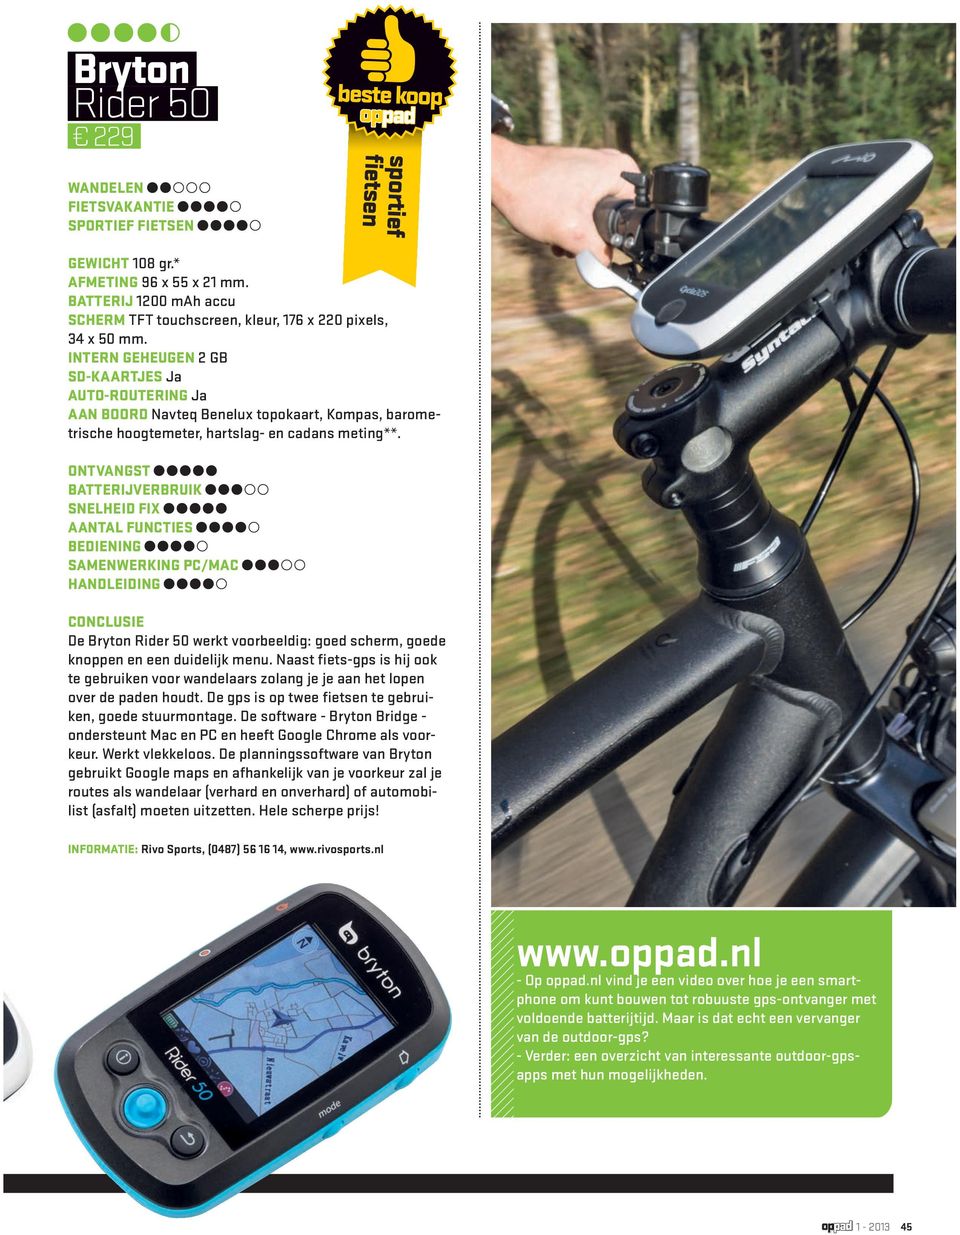 De Bryton Rider 50 werkt voorbeeldig: goed scherm, goede knoppen en een duidelijk menu. Naast fiets-gps is hij ook te gebruiken voor wandelaars zolang je je aan het lopen over de paden houdt.